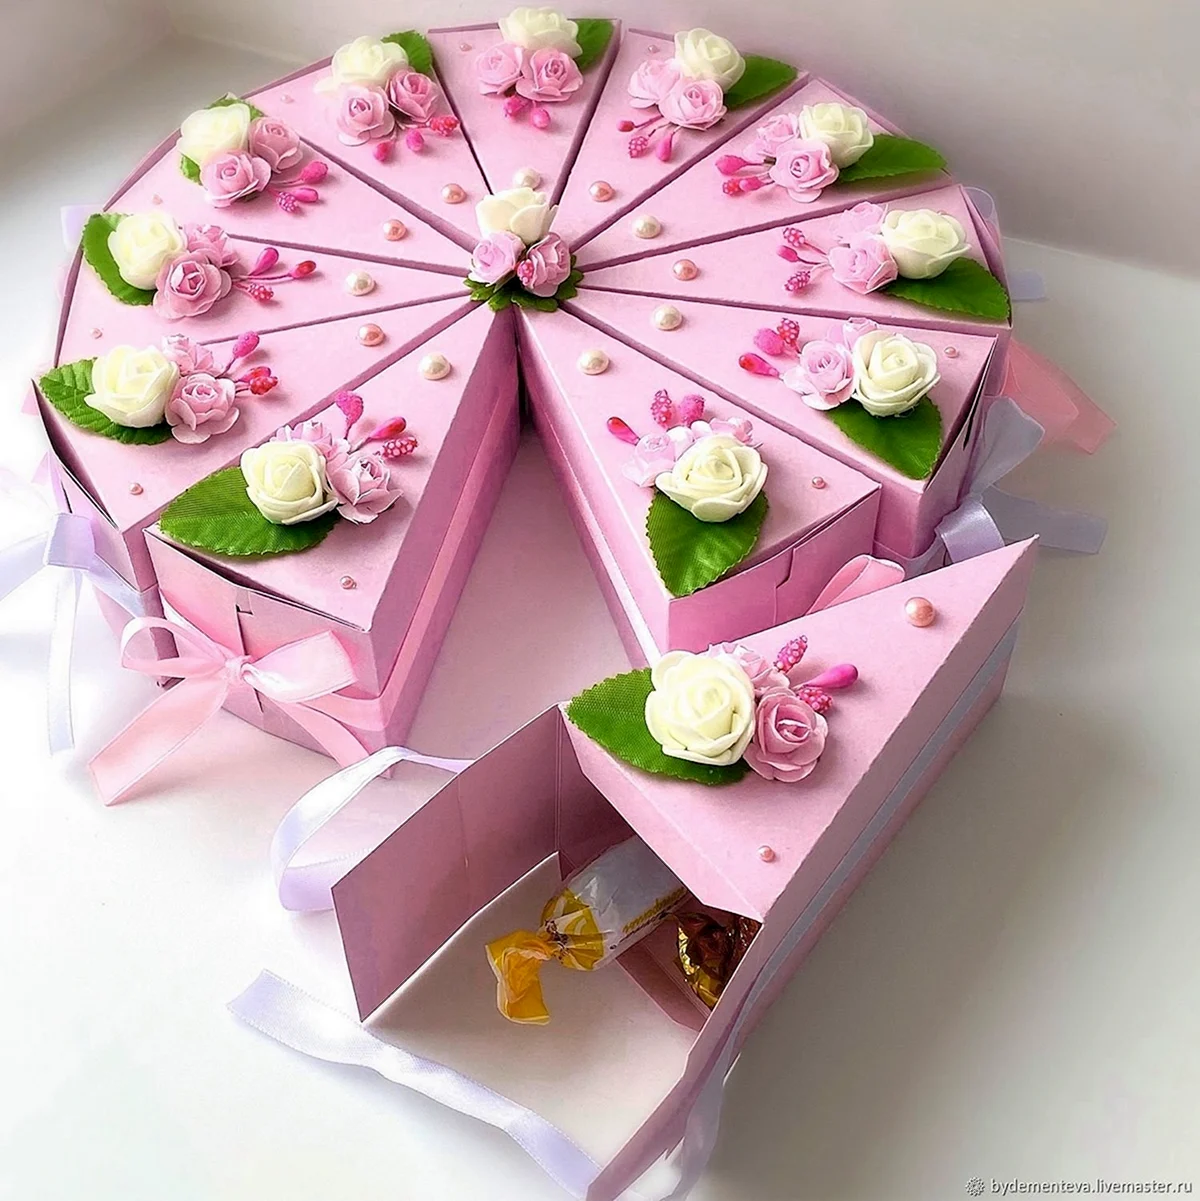 Декор для тортика из коробок